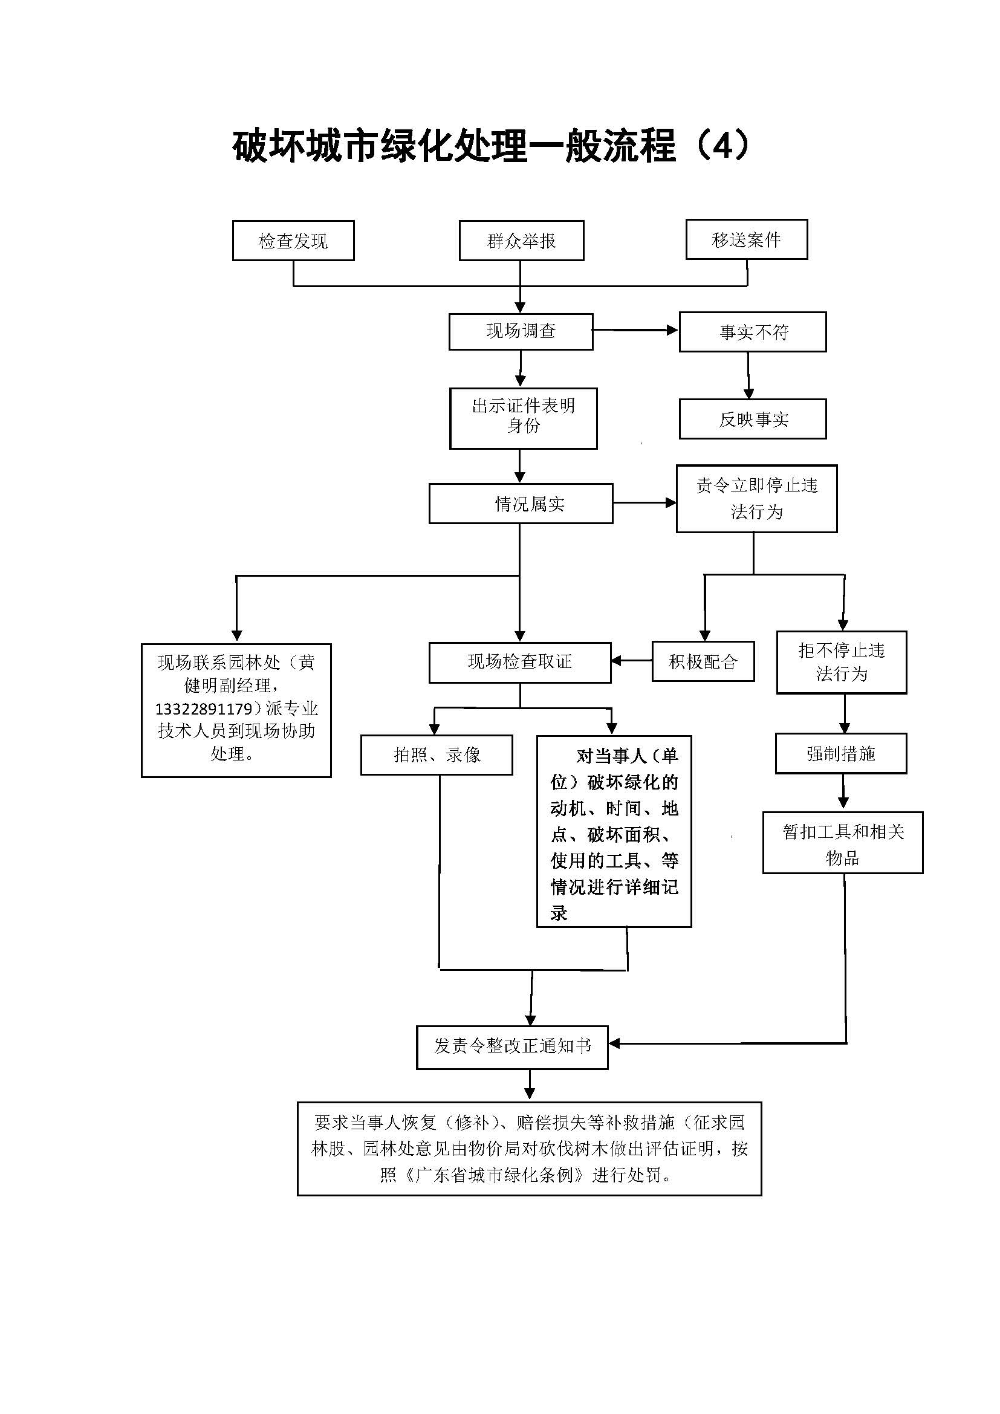 台山市城市管理和综合执法局行政处罚流程_页面_6.jpg